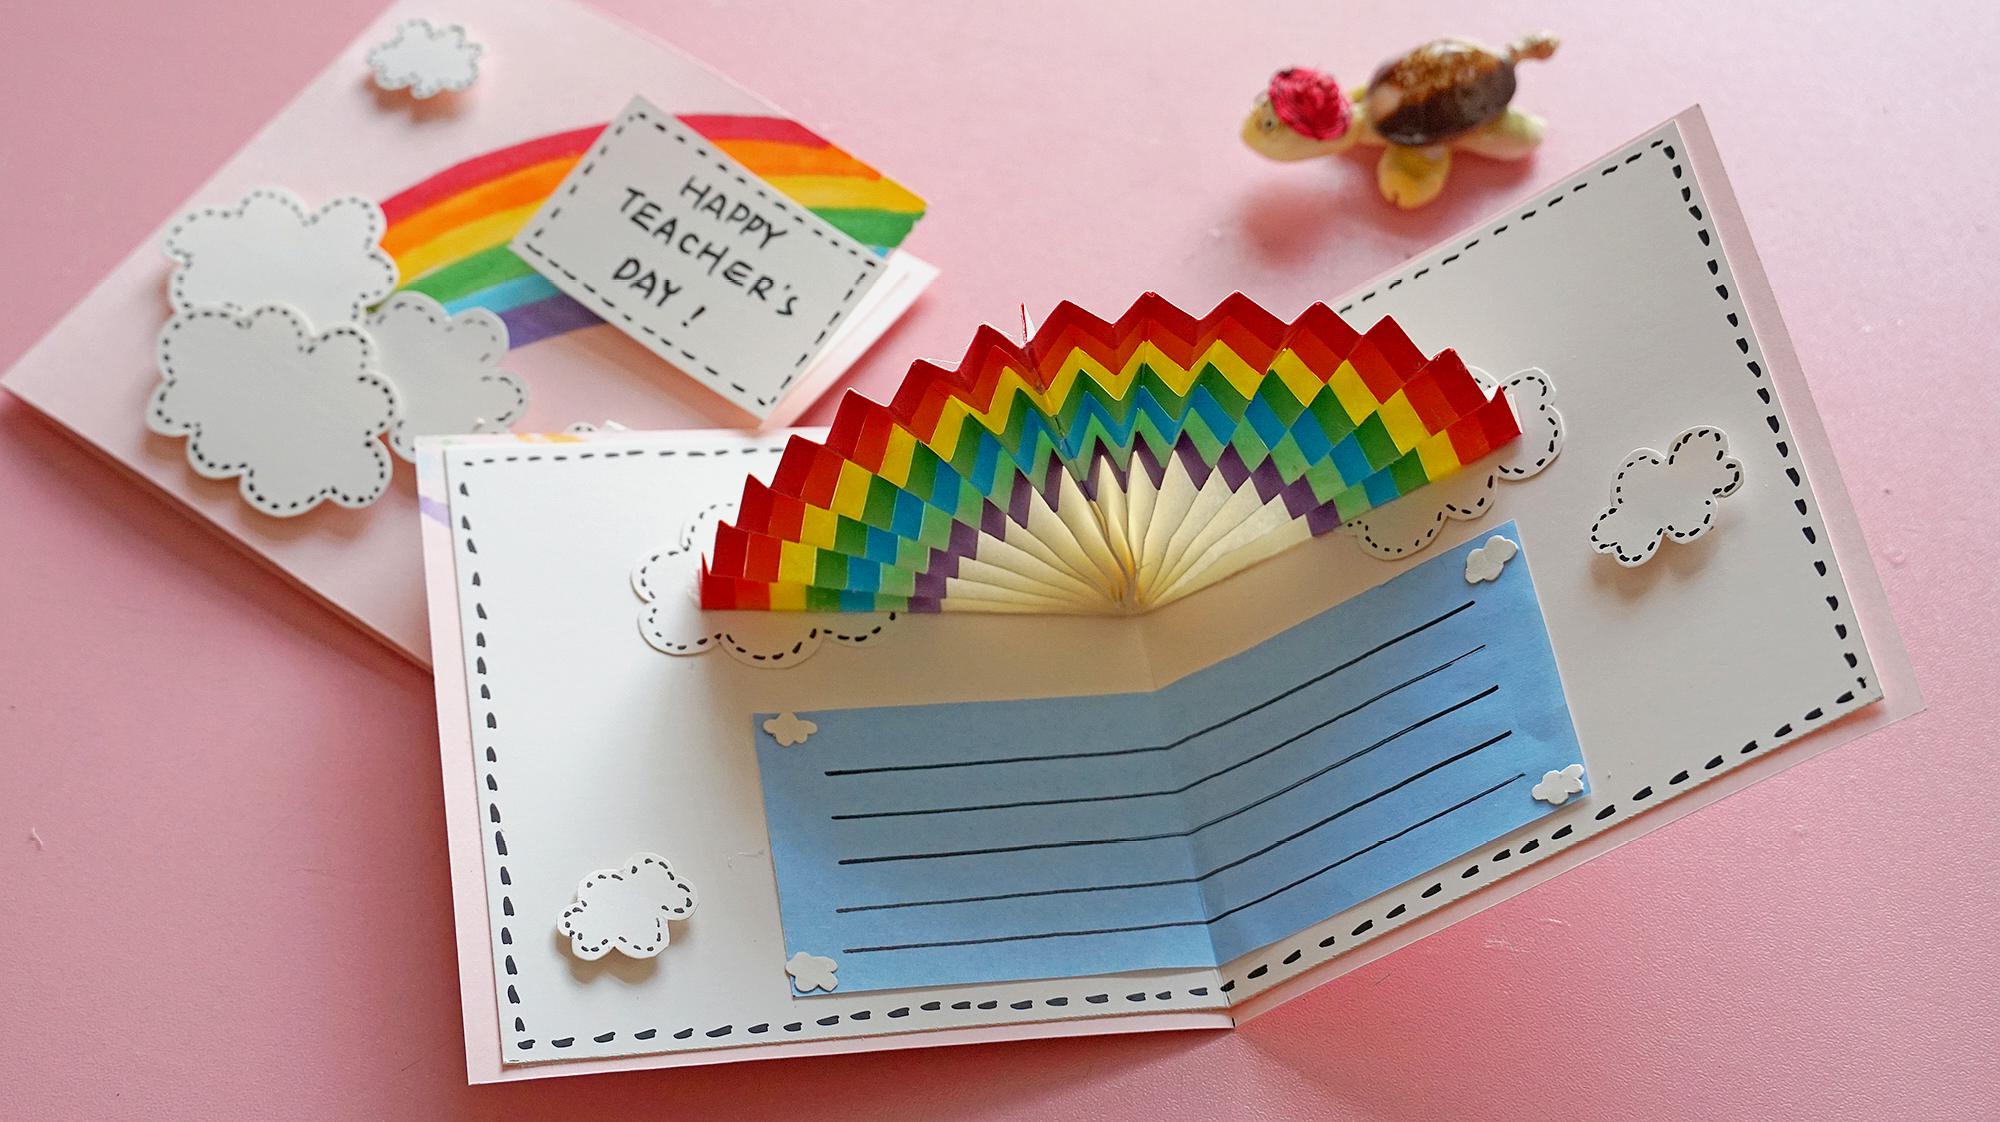 又一款漂亮的教师节贺卡,打开是立体的彩虹,非常小清新!